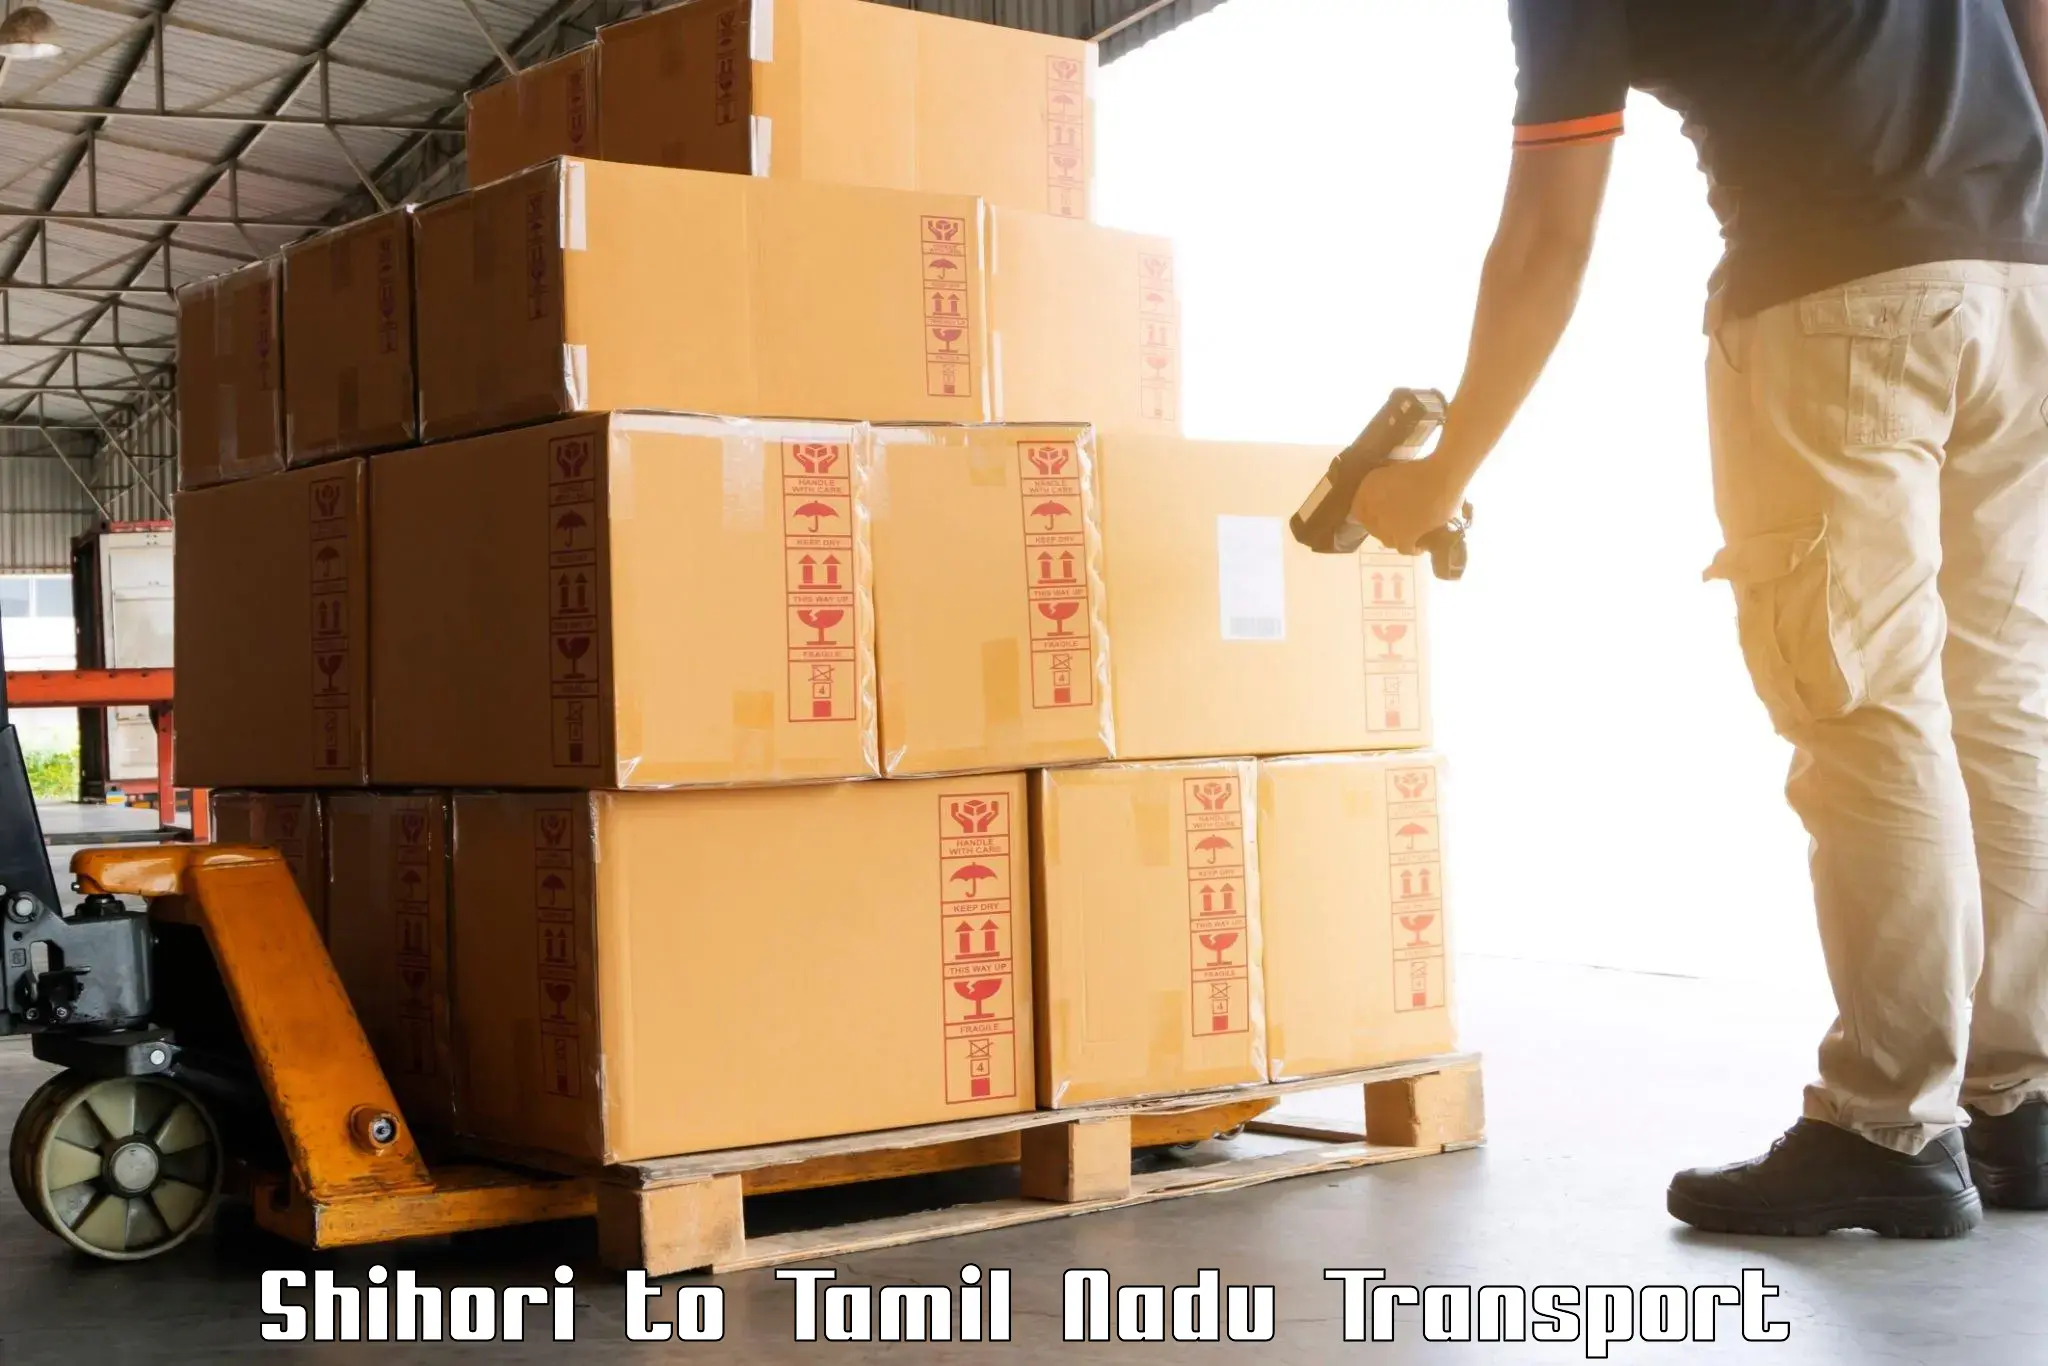 India truck logistics services in Shihori to Tamil Nadu